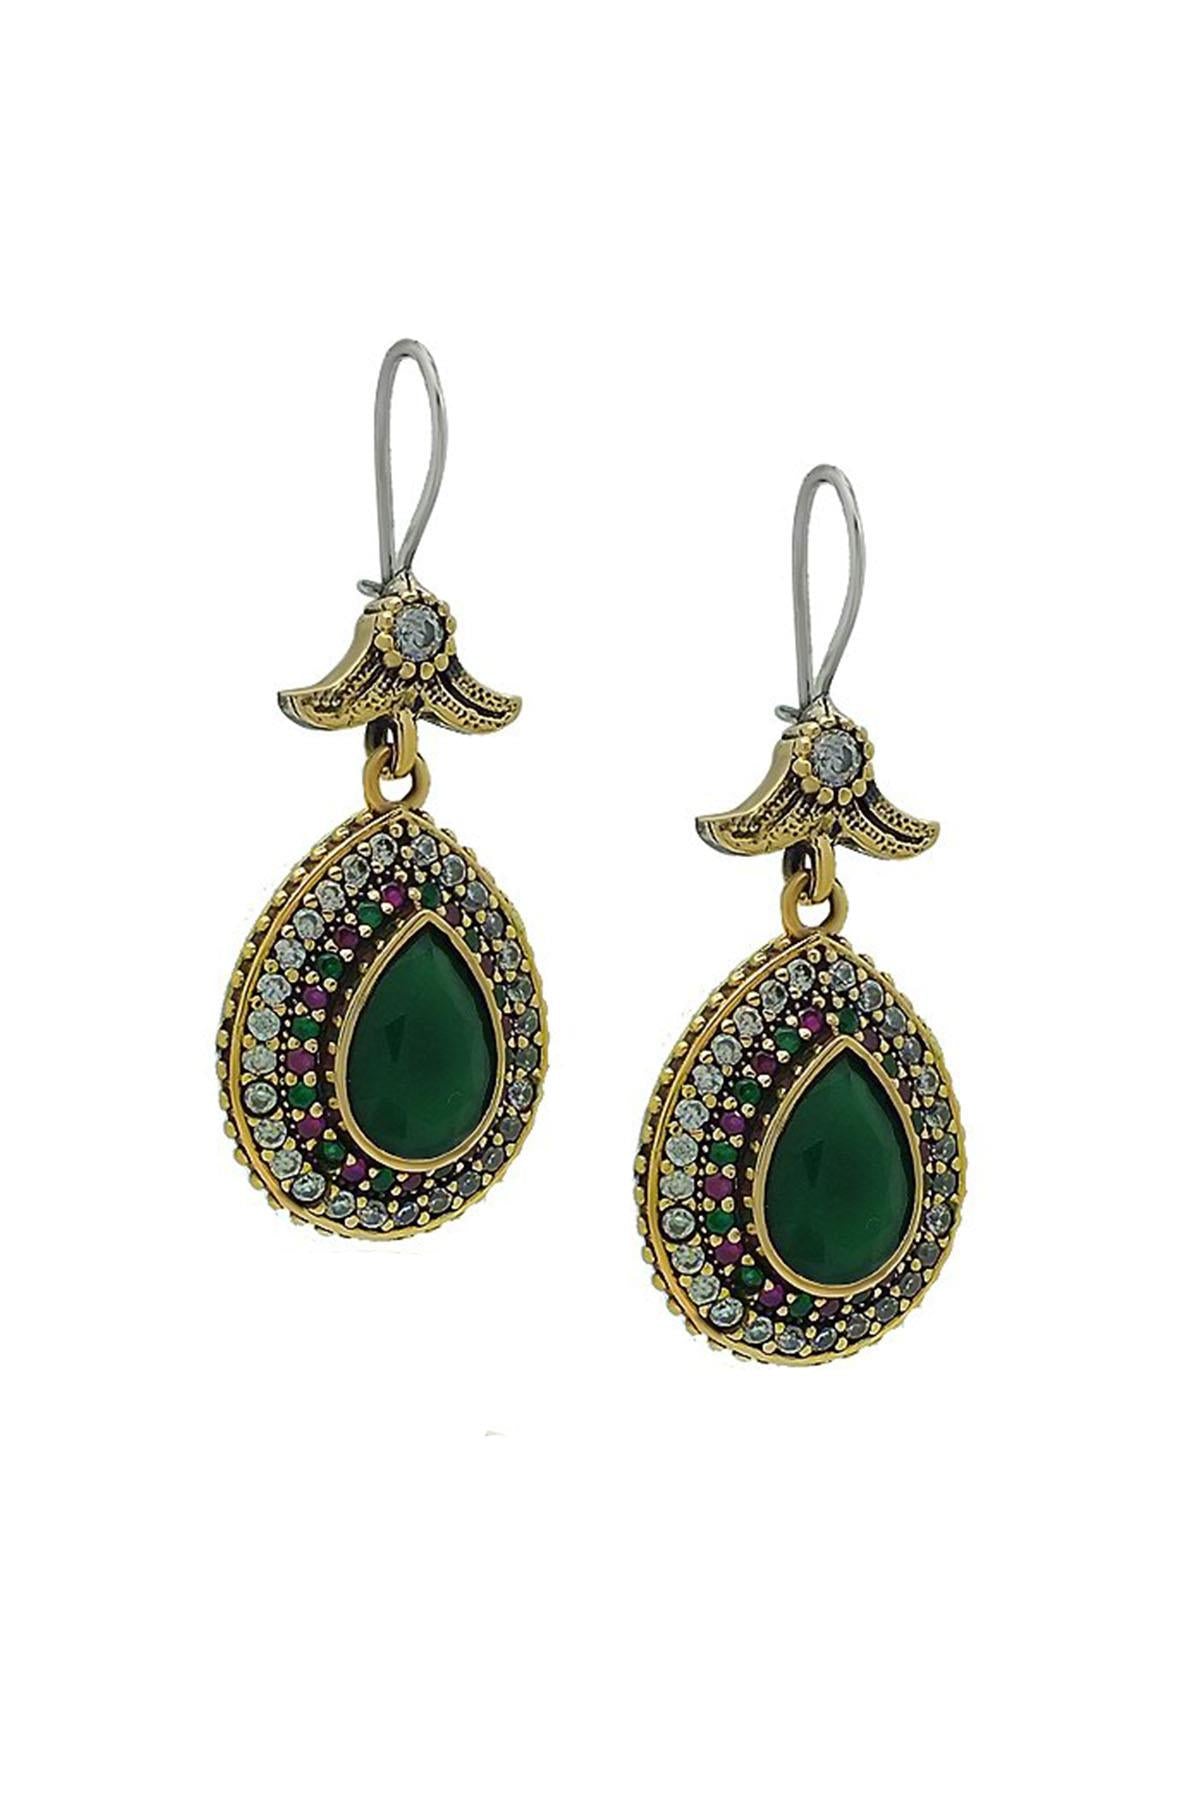 Green Emerald Stone Silver Drop Model Natural Stone Earrings Ottoman Hürrem Didar Sultan Earring Jewelry